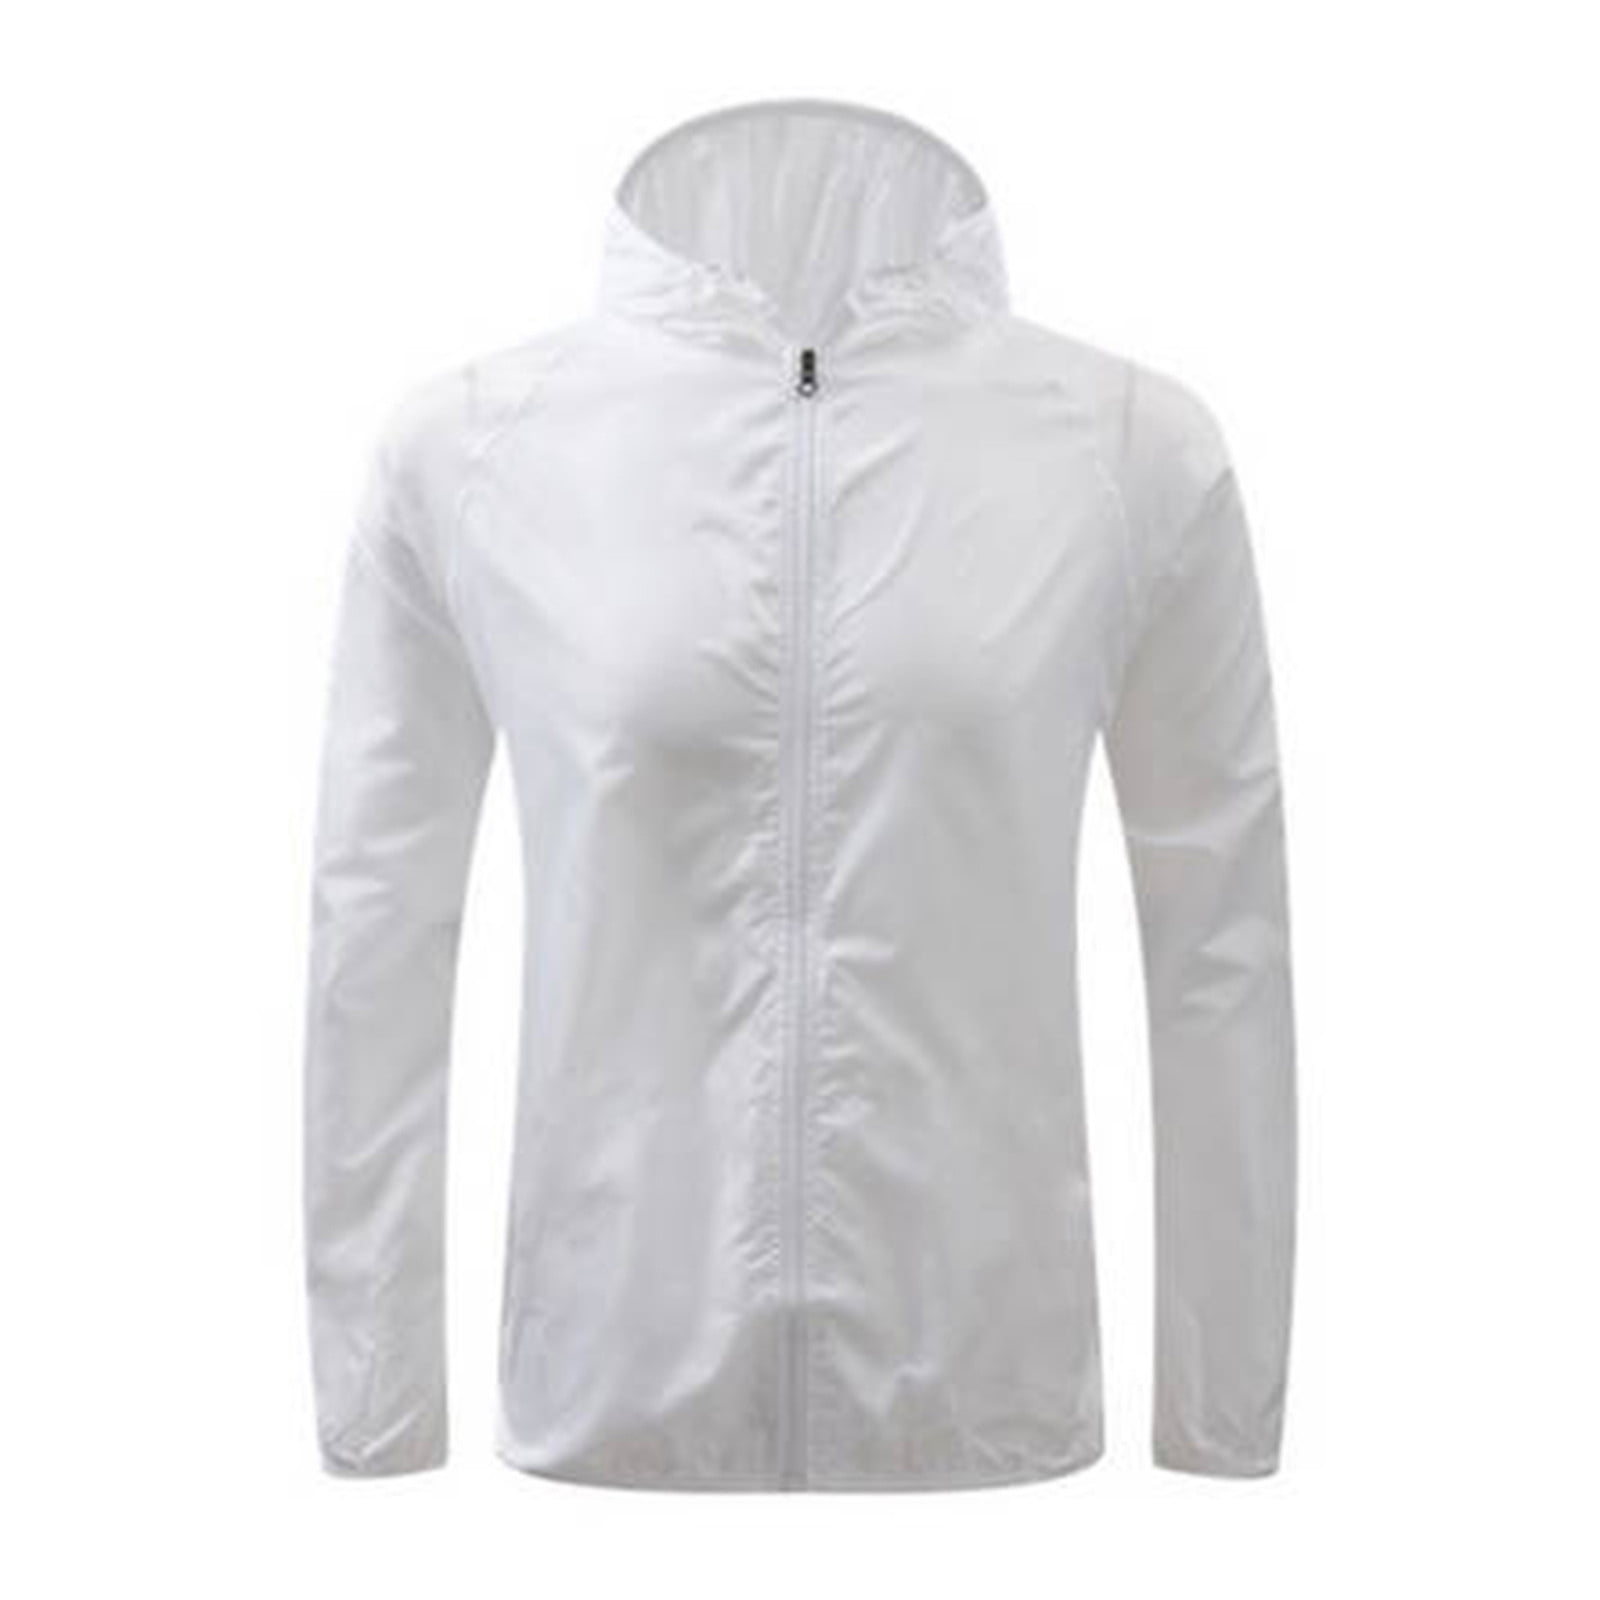 Waterproof Jackets for Women, Womens Windproof Jacket Long Sleeve Solid ...